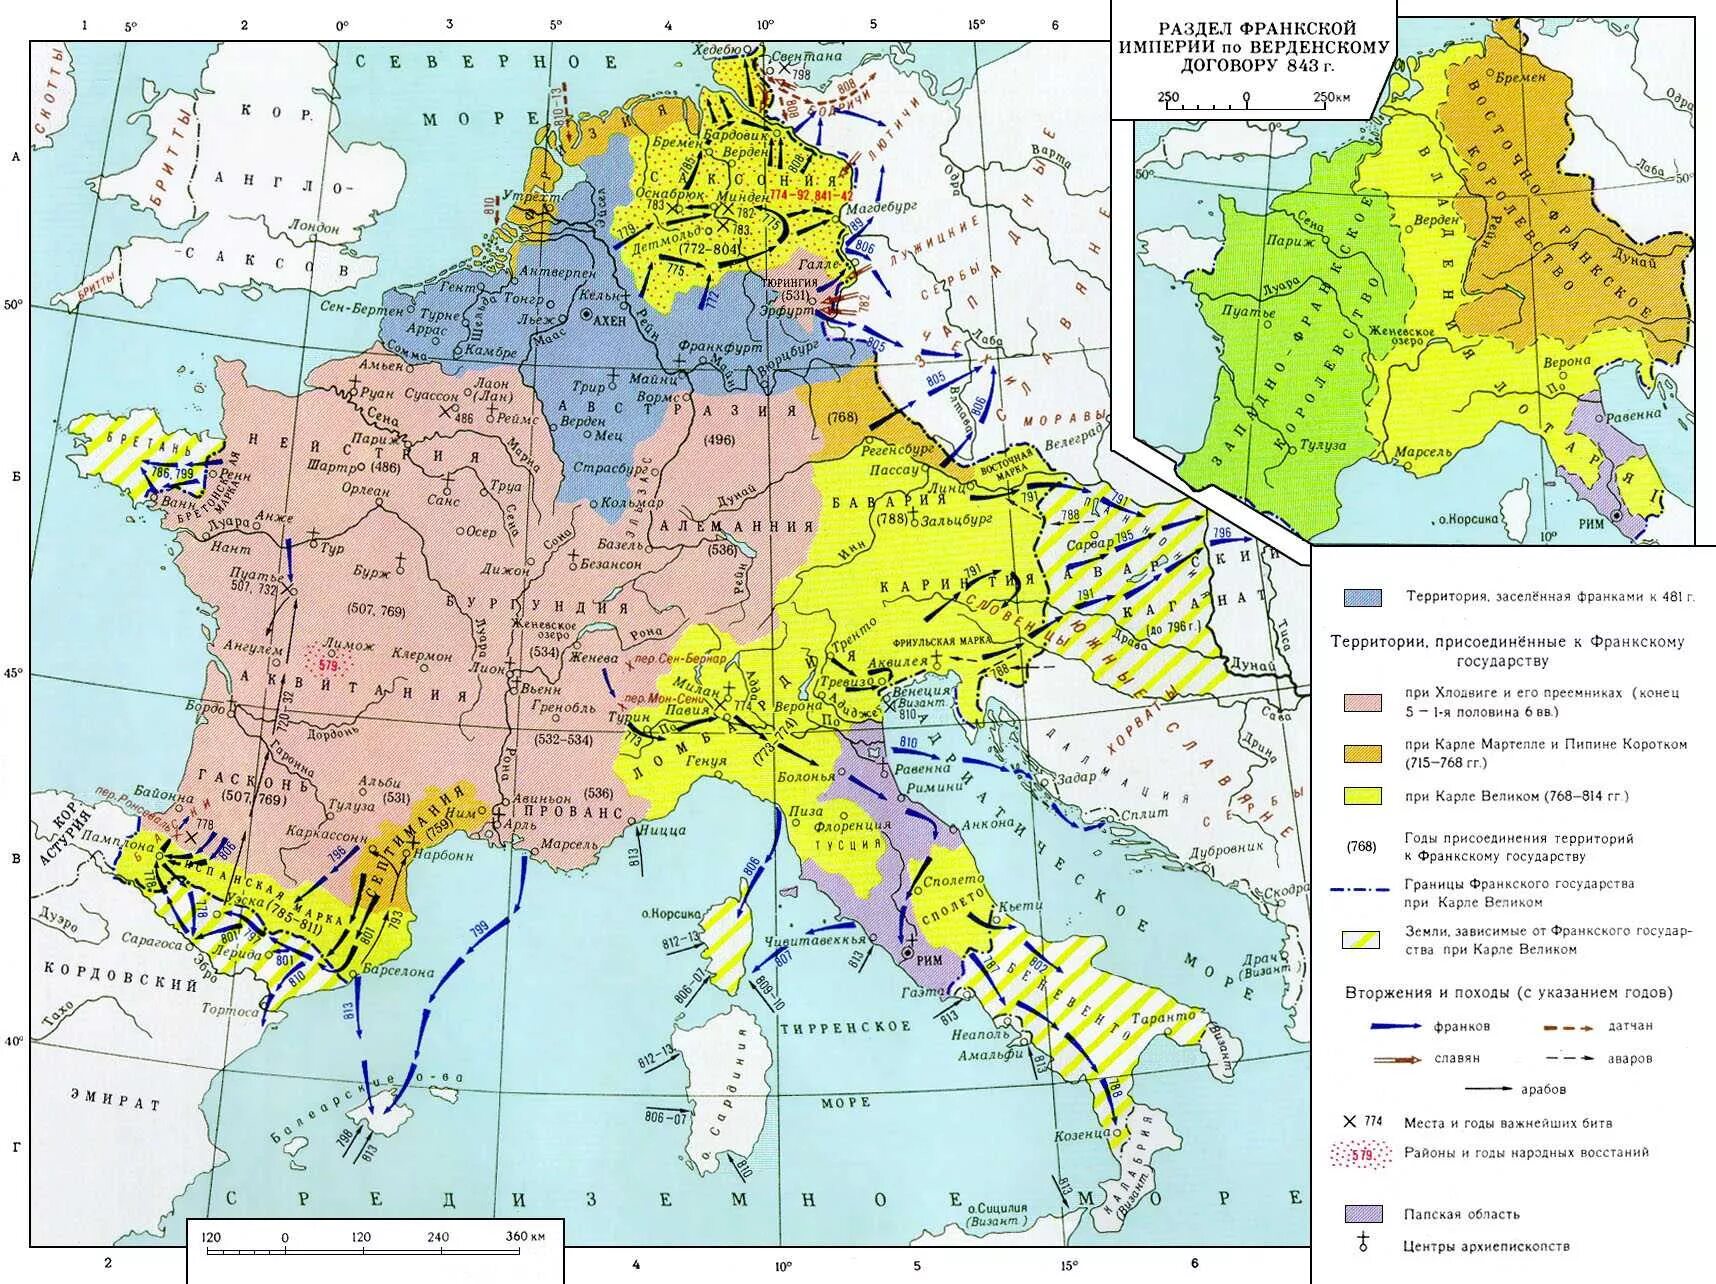 Создание франкской империи. Столица Франкского государства при Карле Великом. Карта Франкского государства при Карле Великом. Франкское государство при Карле.